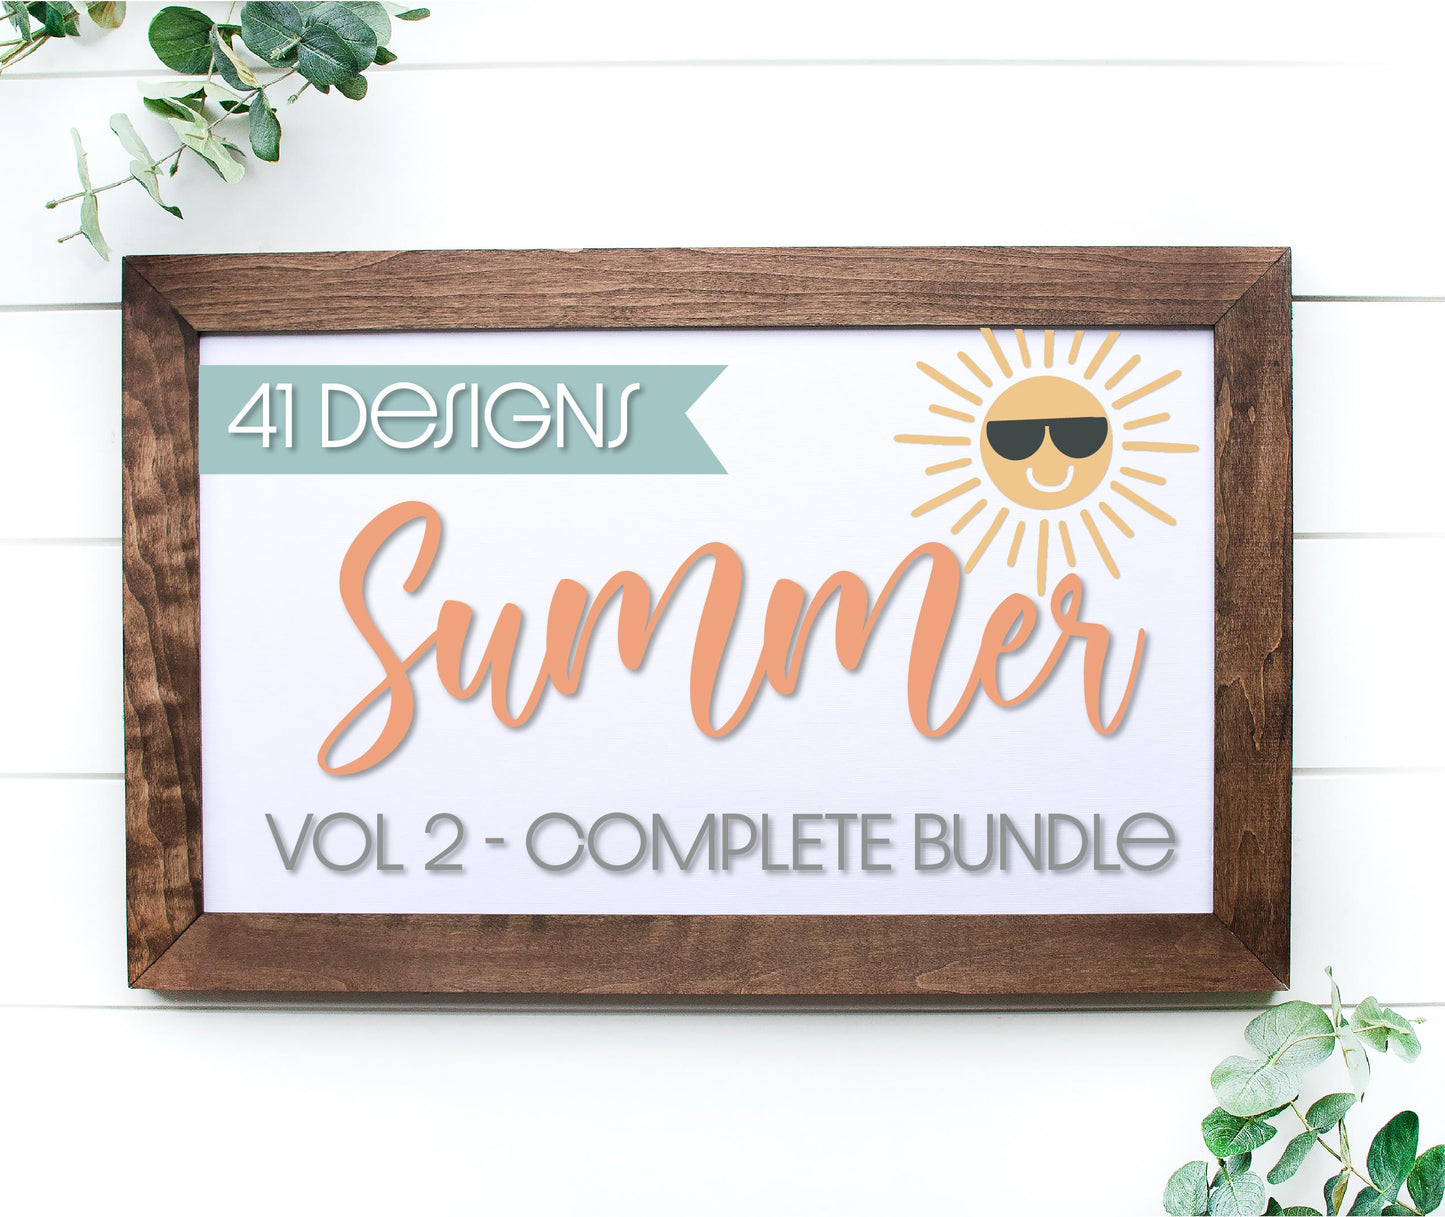 Complete Summer Bundle VOL 2 - 41 designs, Summer door hanger SVG, Summer Welcome sign SVG, Summer decor, Summer porch decor, digital downloads for laser cutters